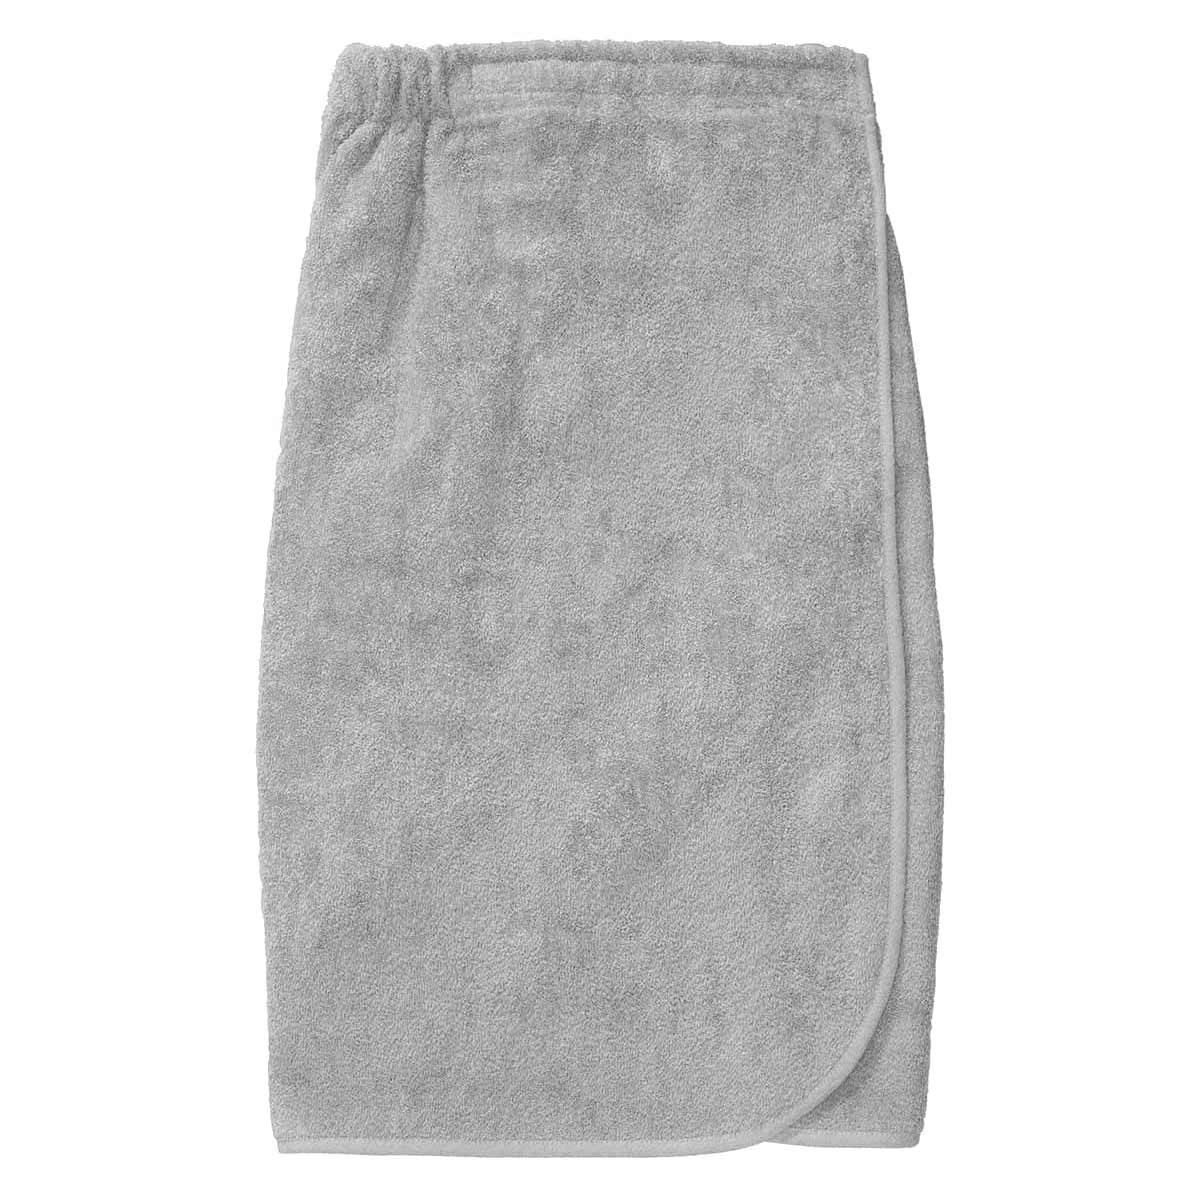 Bath sarong - 100% cotton